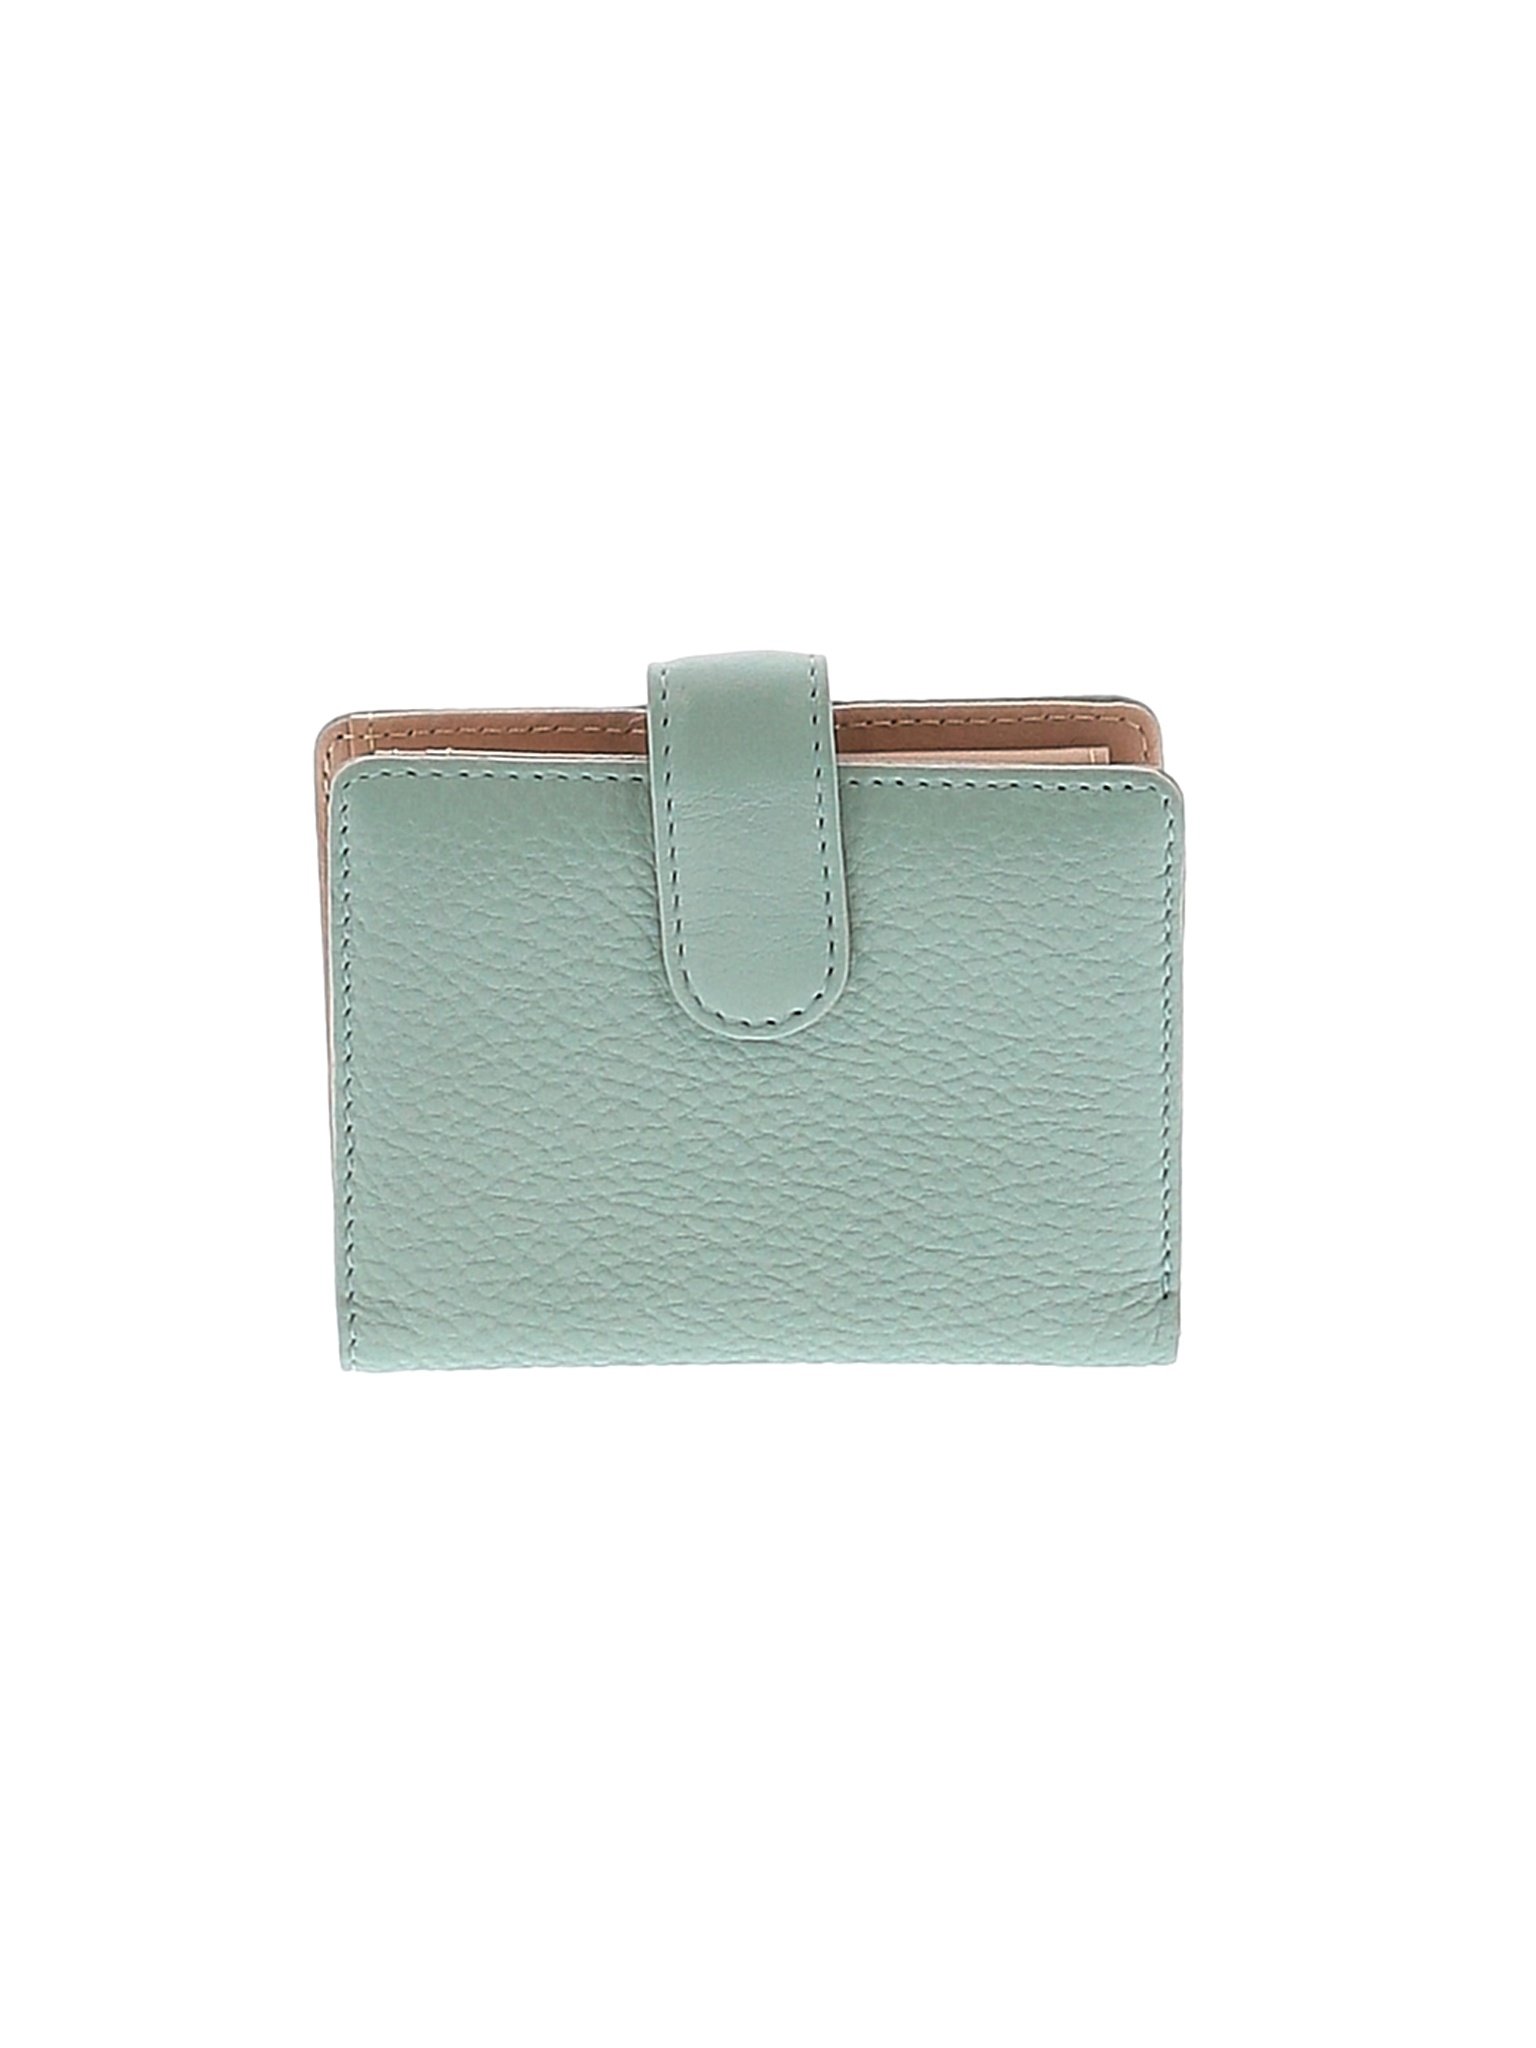 Unbranded Women Green Wallet One Size | eBay